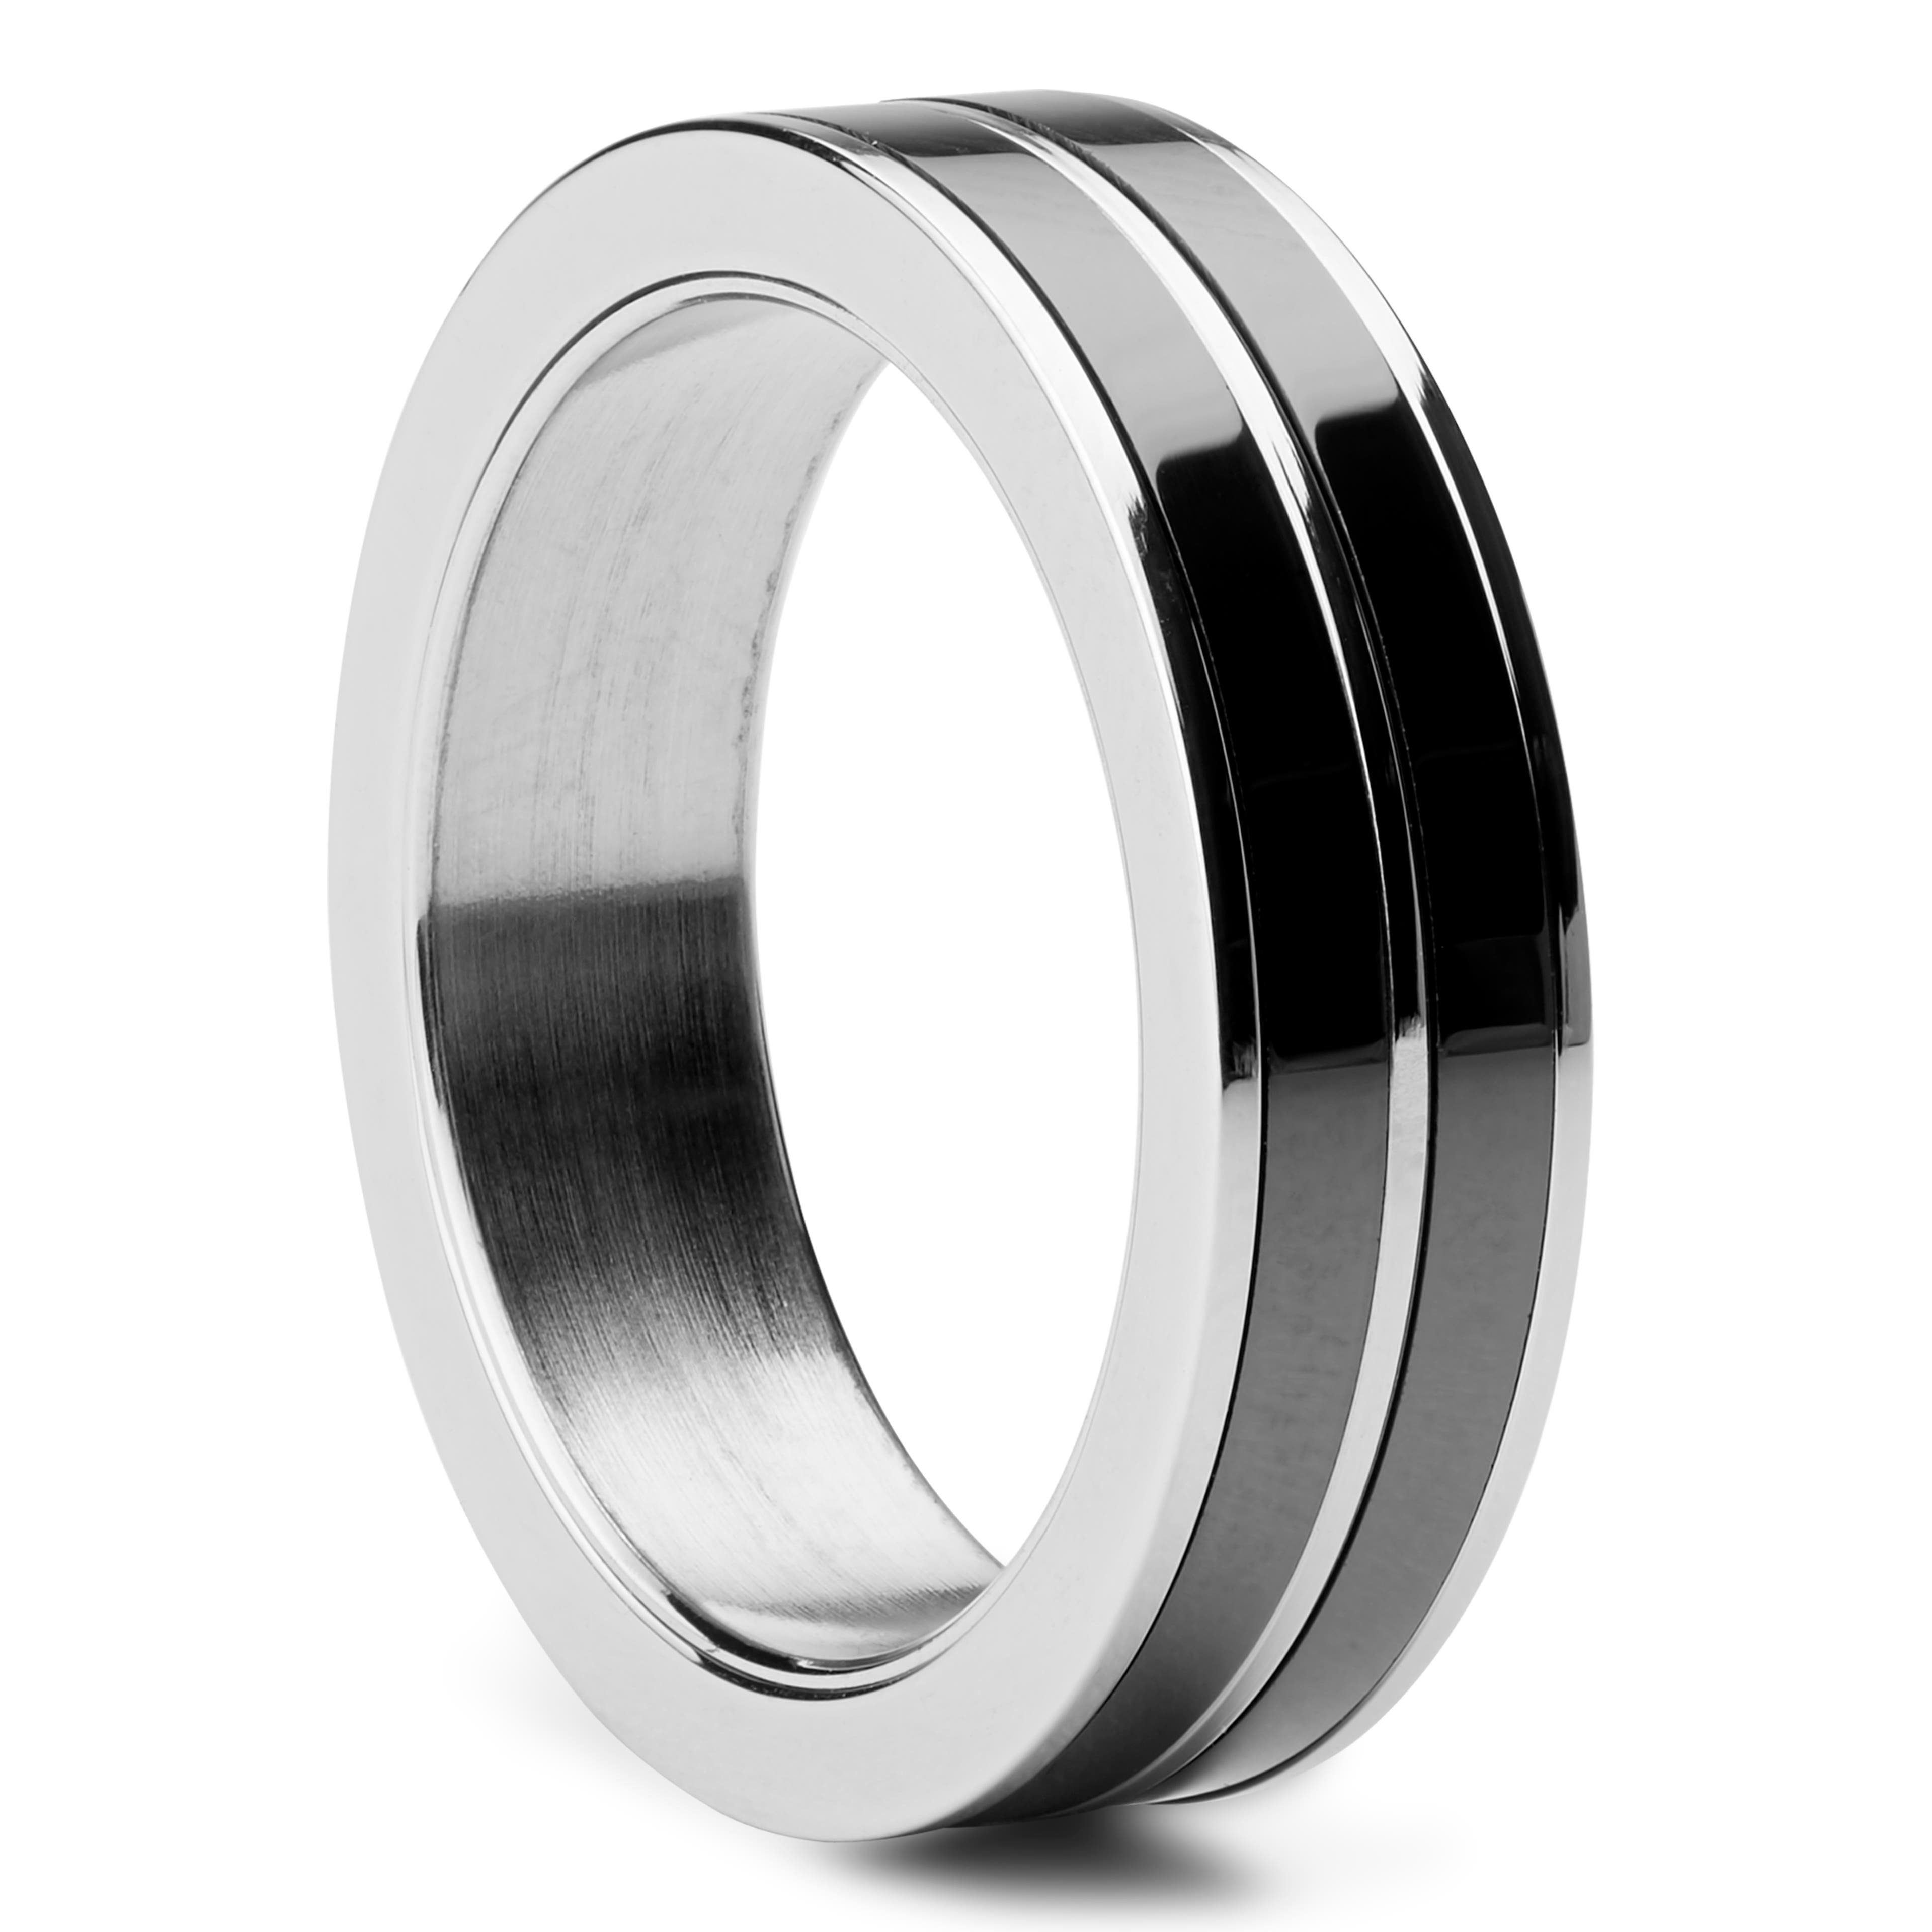 Stalowo-ceramiczny pierścień w kolorze czarno-srebrnym